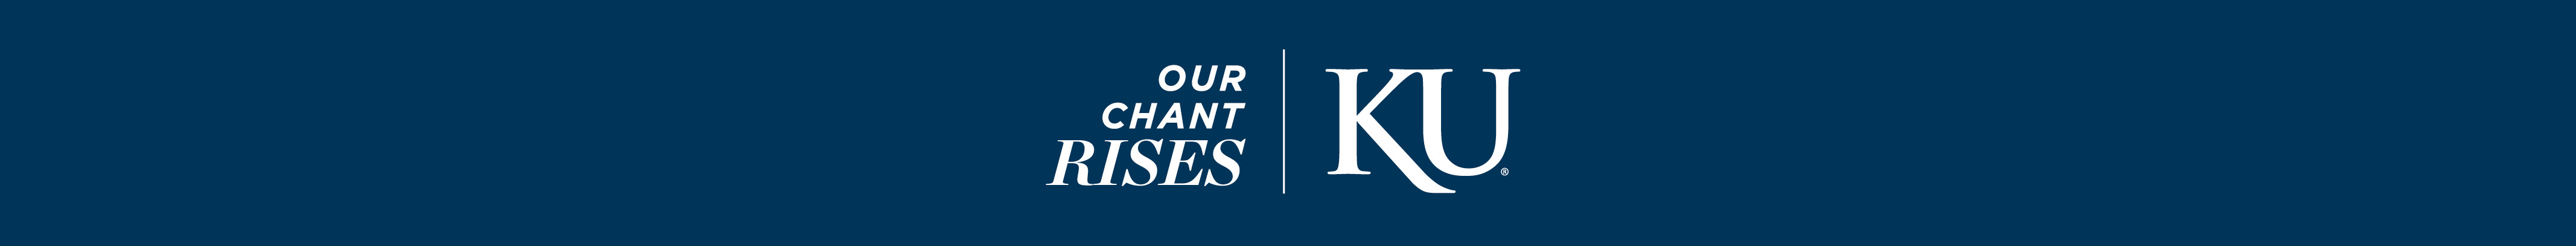 KU Marketing Communications's profile banner